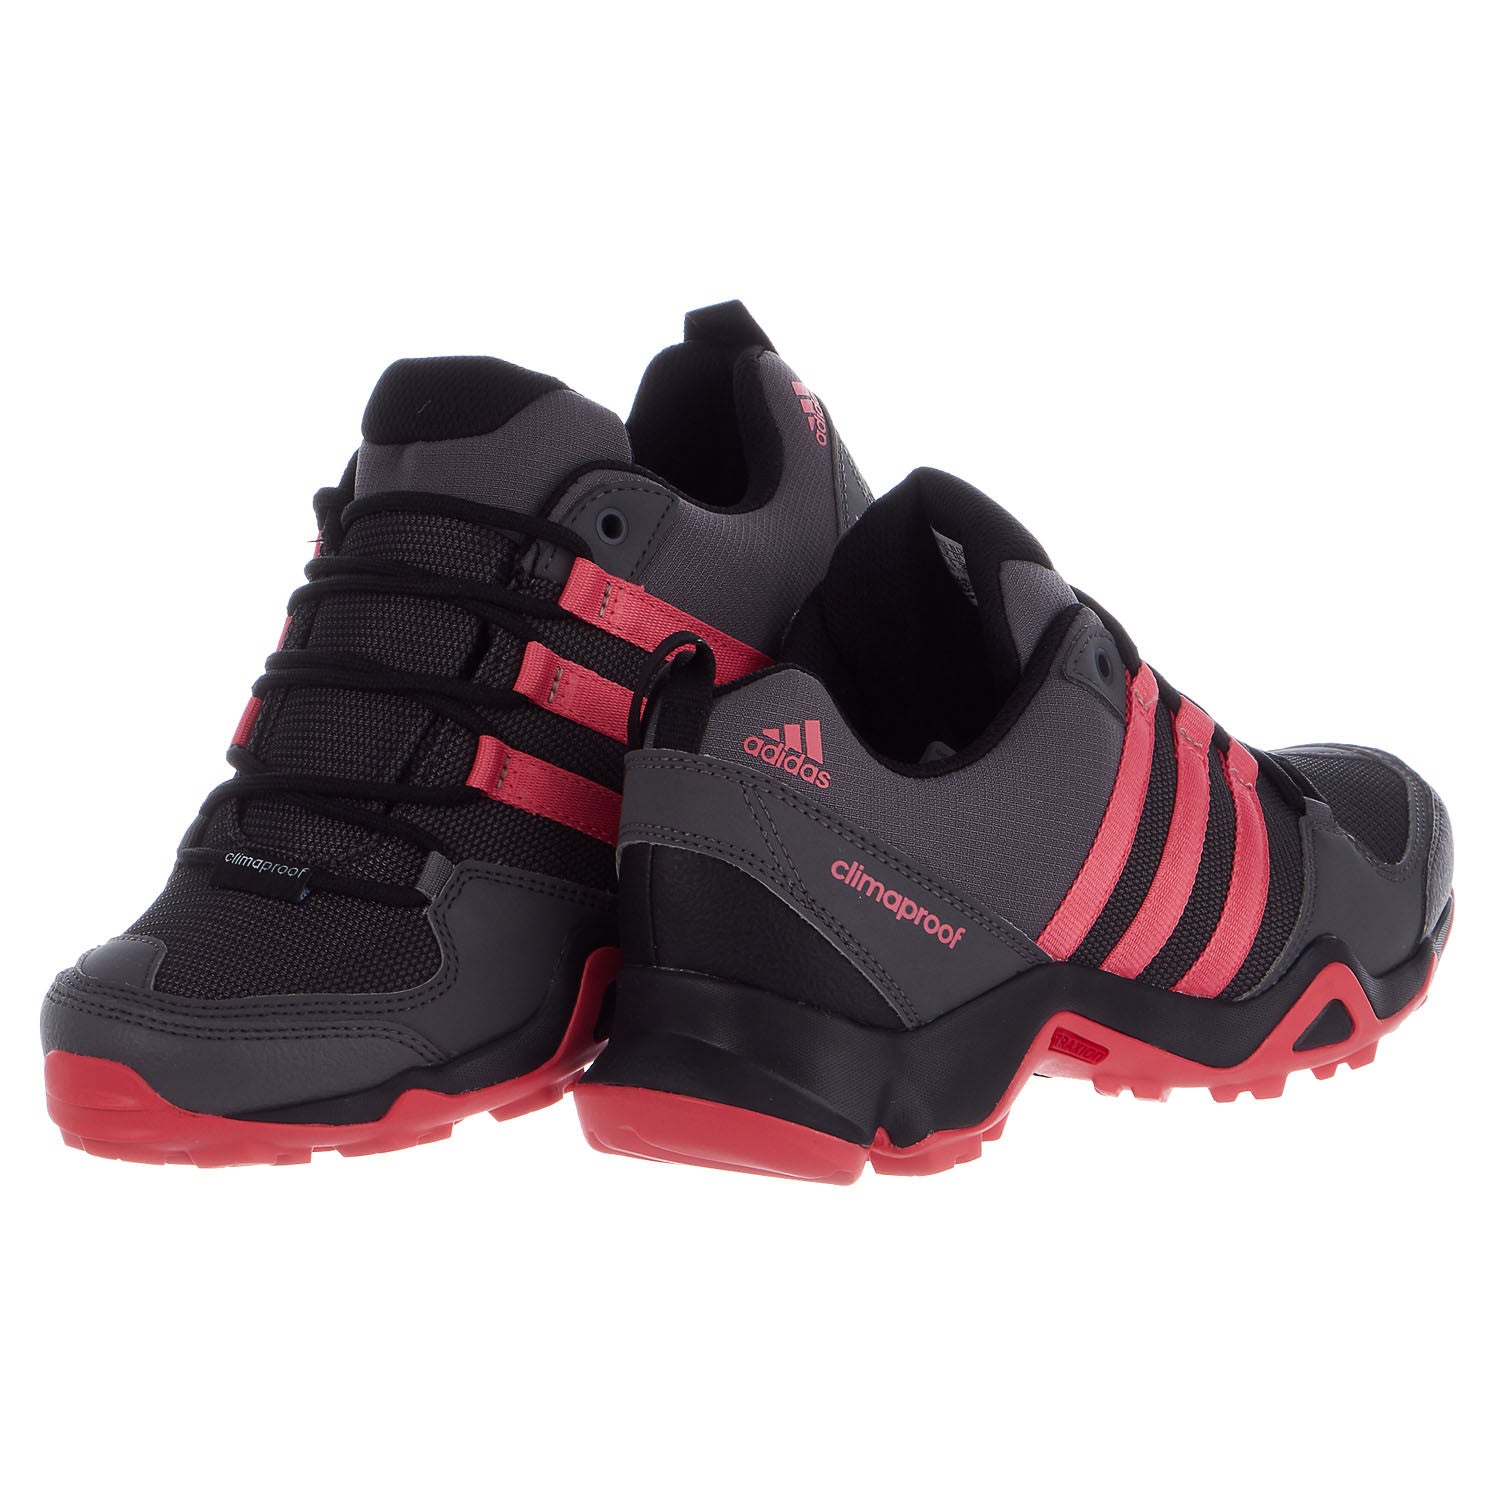 Voorschrijven doorgaan Specialiteit Adidas Outdoor AX 2 CP Hiking Shoe - Women's - Shoplifestyle